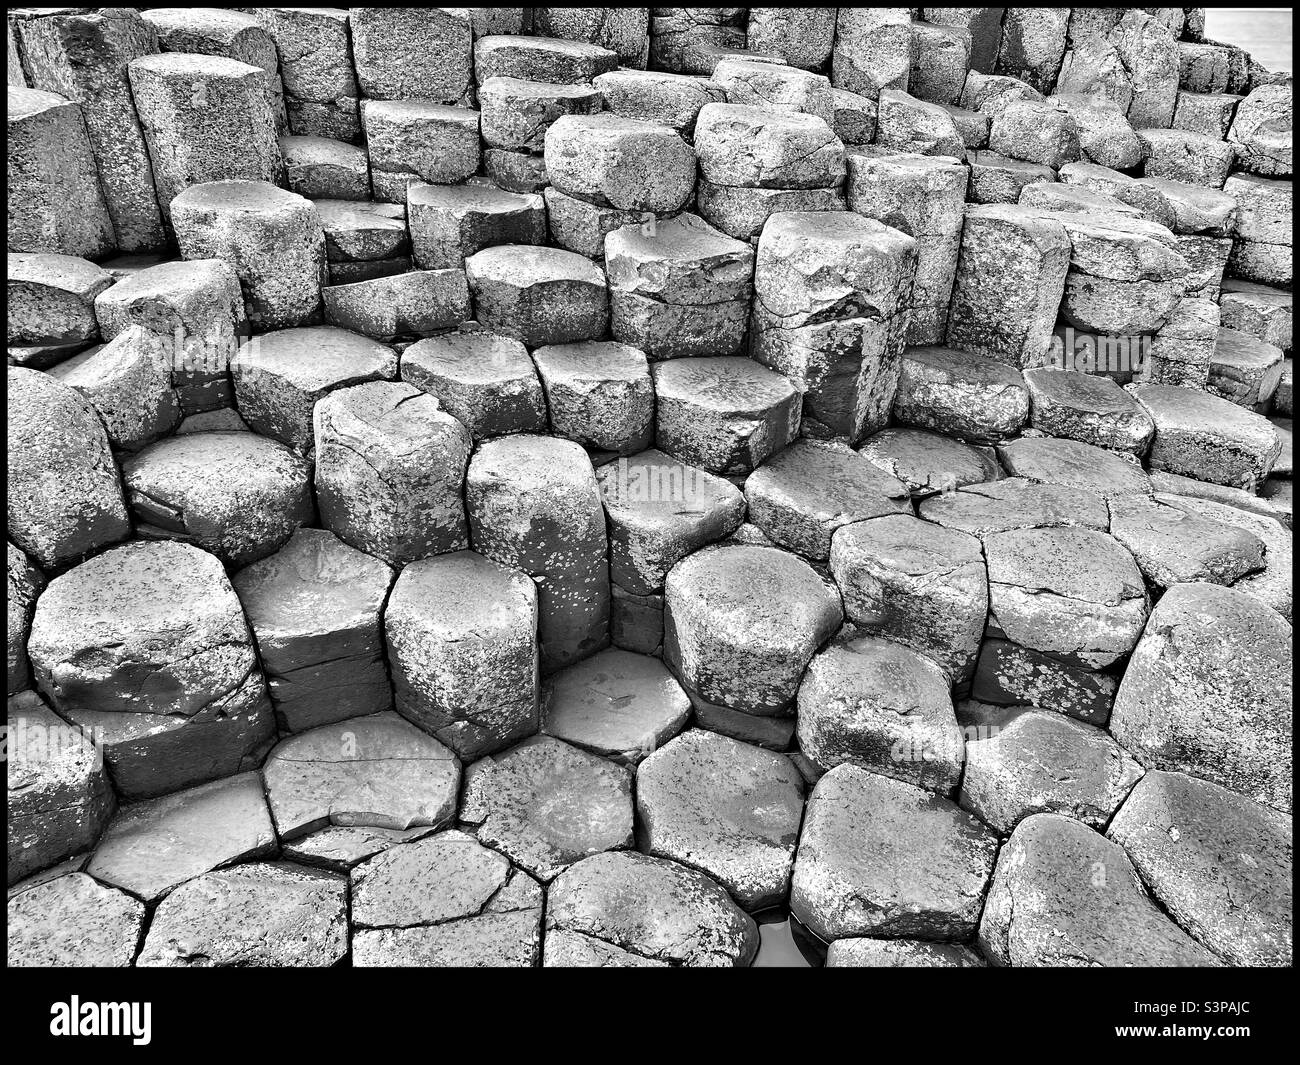 Les colonnes de roche volcanique de forme hexagonale de Giant’s Causeway sont célèbres dans le monde entier. Cette merveille naturelle spectaculaire est visitée chaque année par des centaines de milliers de touristes. Photo ©️ COLIN HOSKINS. Banque D'Images